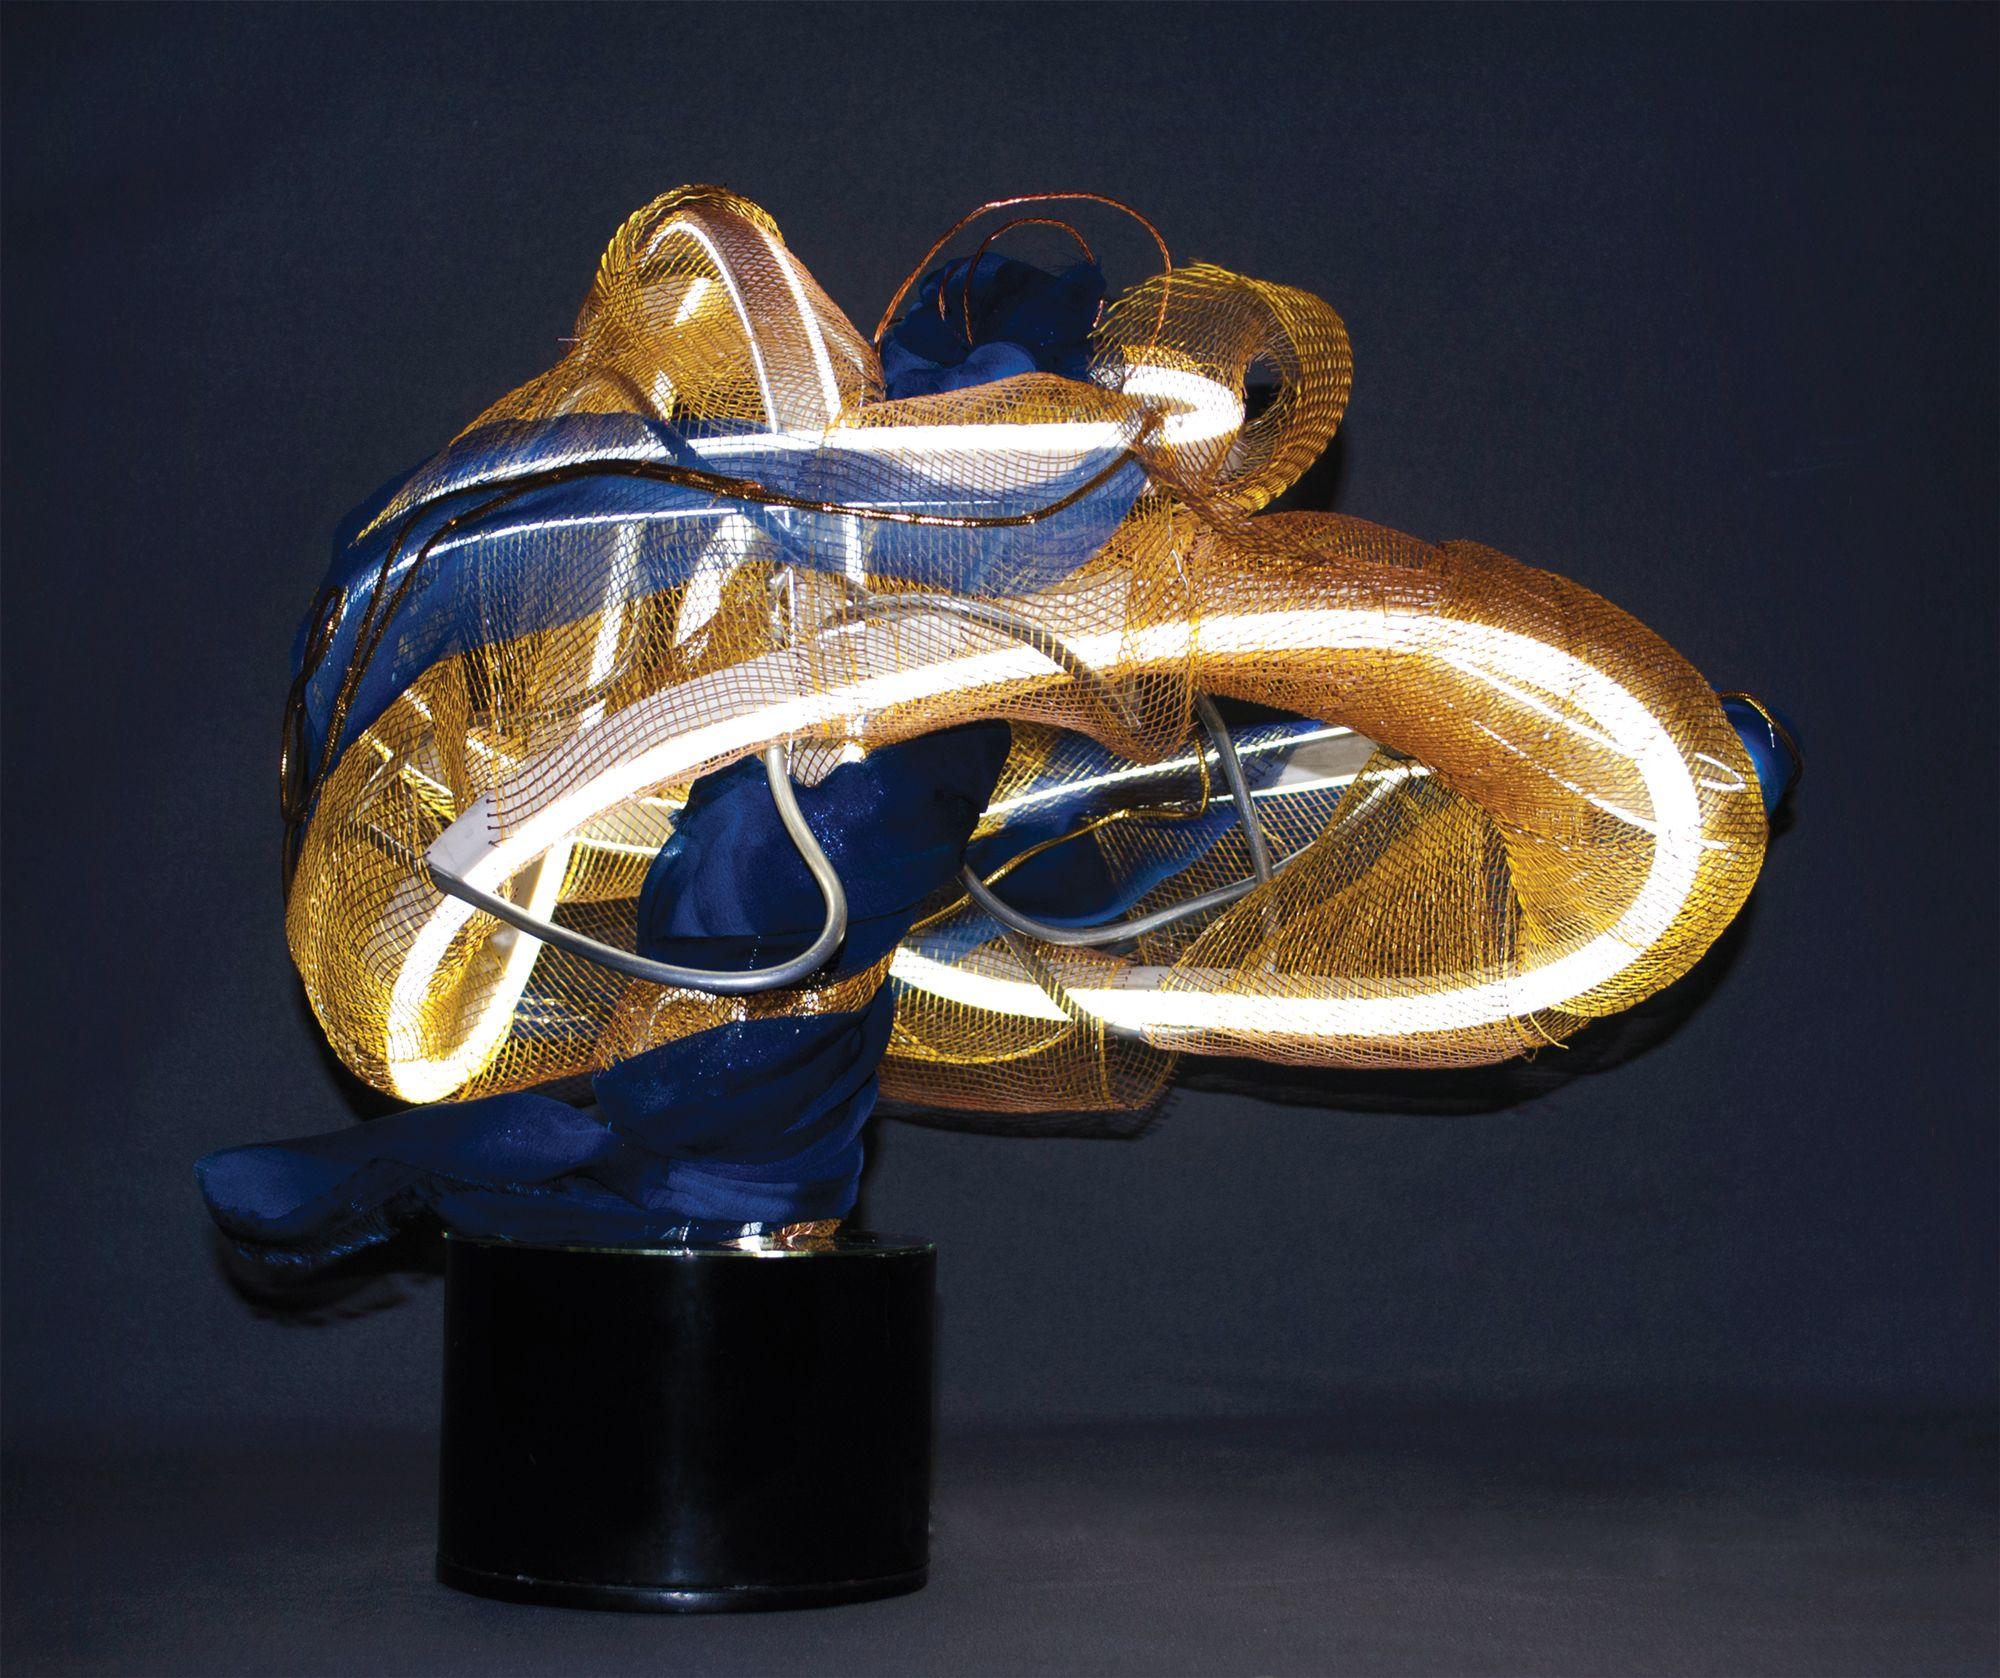 Jayne B. Gaskins - Spiraling Currents of Golden Light